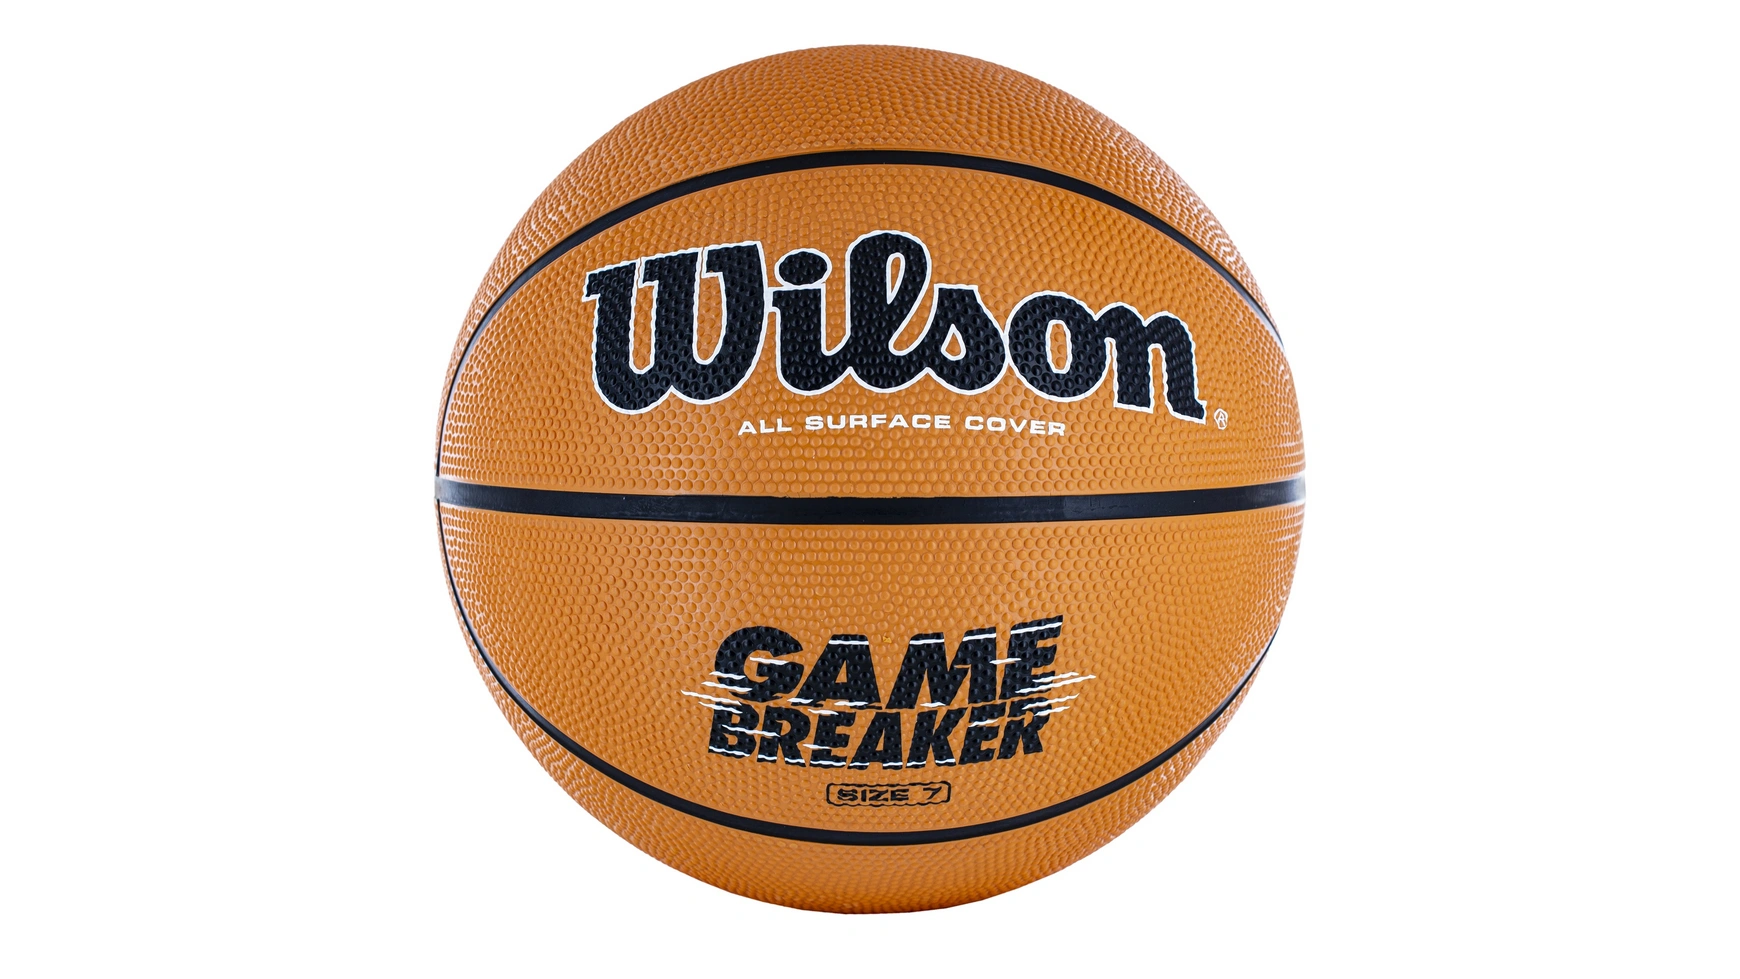 Wilson Basketball Gamebreaker, размер 7